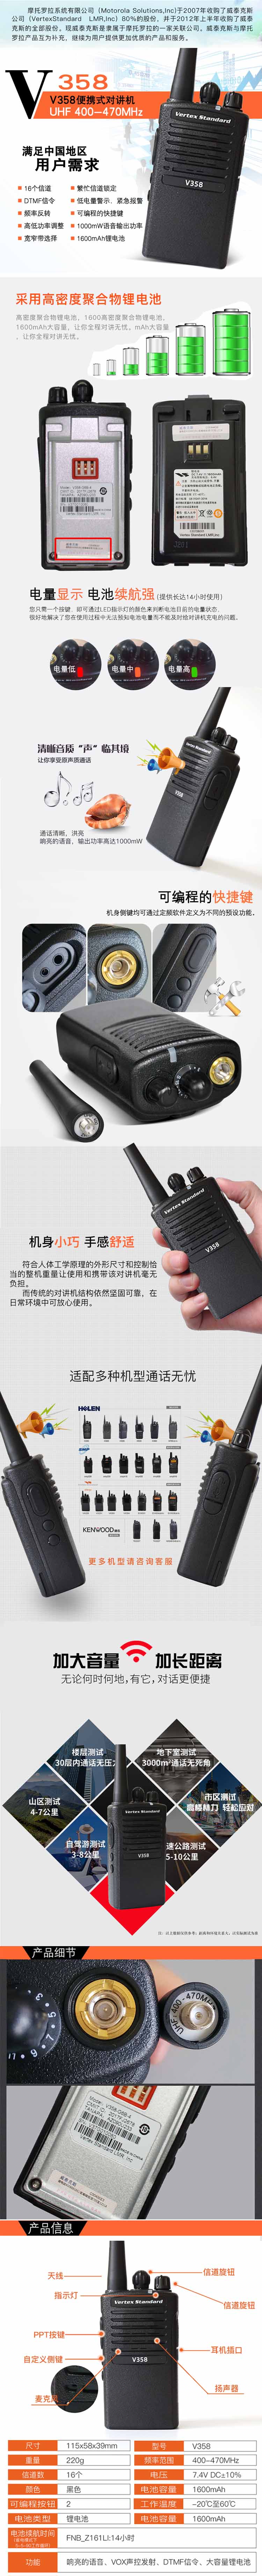 摩托罗拉Smp358无线对讲机